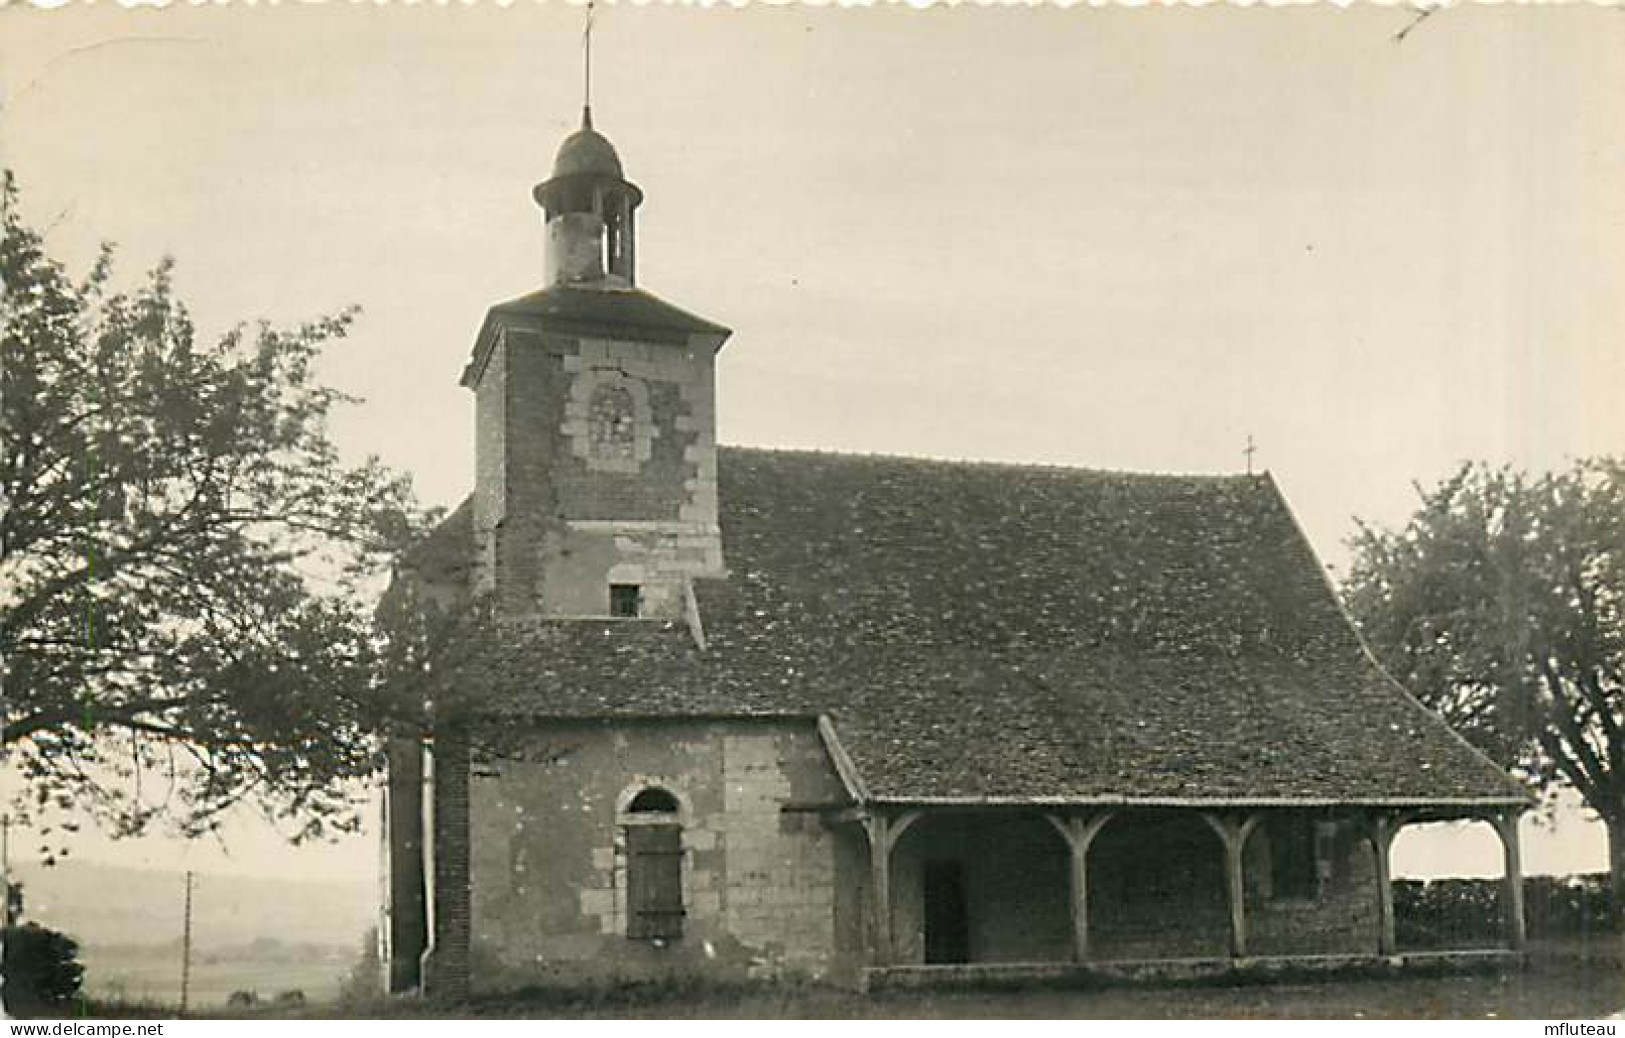 89* AILLANT SUR THOLON  Chapelle  (CPSM Petit Format)        MA97,1297 - Aillant Sur Tholon